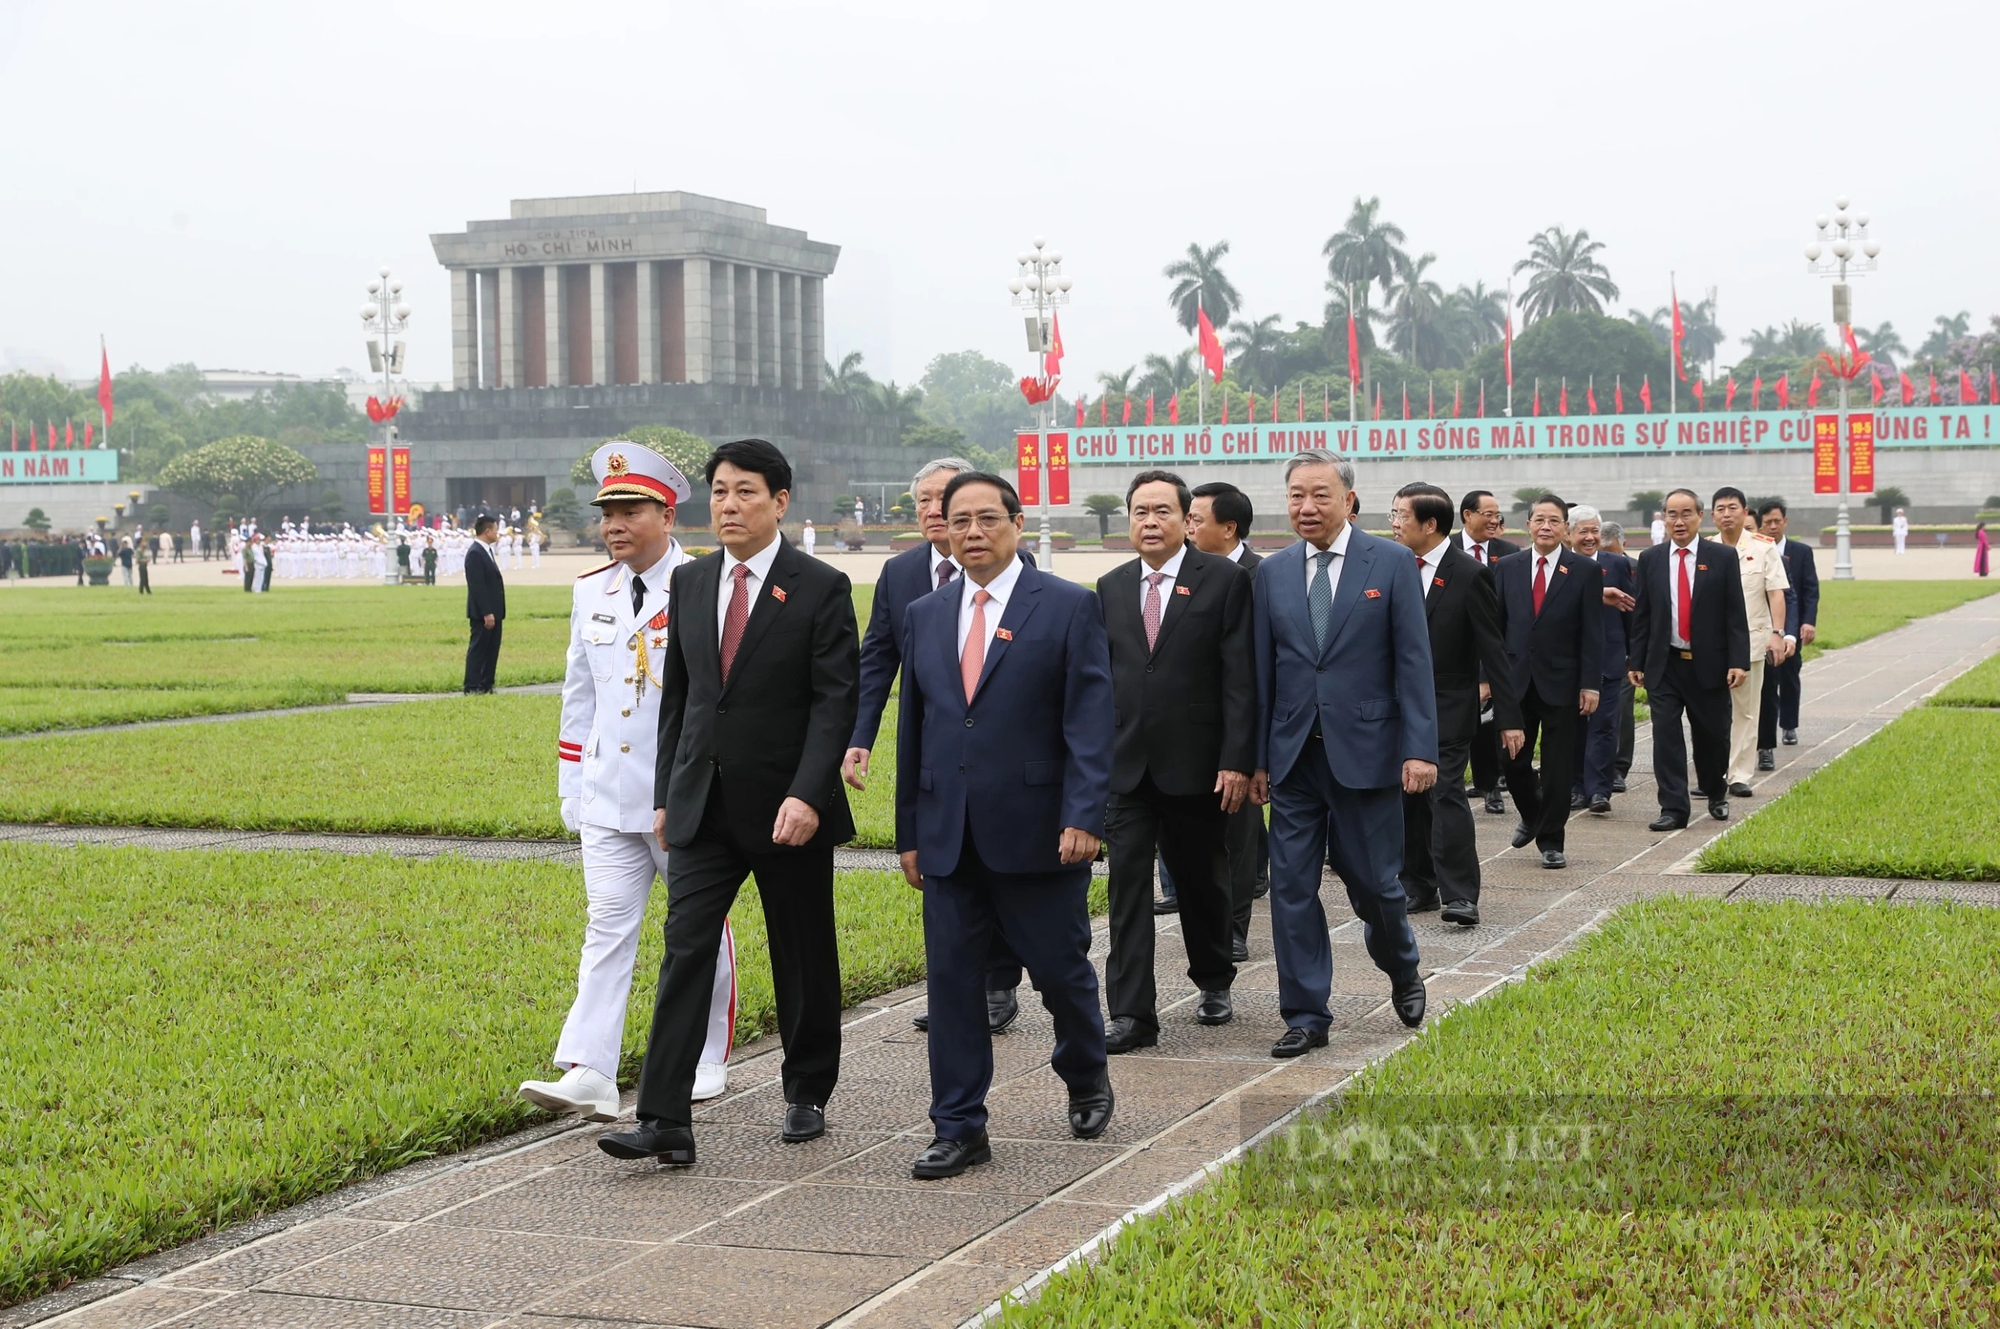 Hình ảnh Lãnh đạo Đảng, Nhà nước vào lăng viếng Bác trước giờ Quốc hội khai mạc Kỳ họp thứ 7- Ảnh 5.